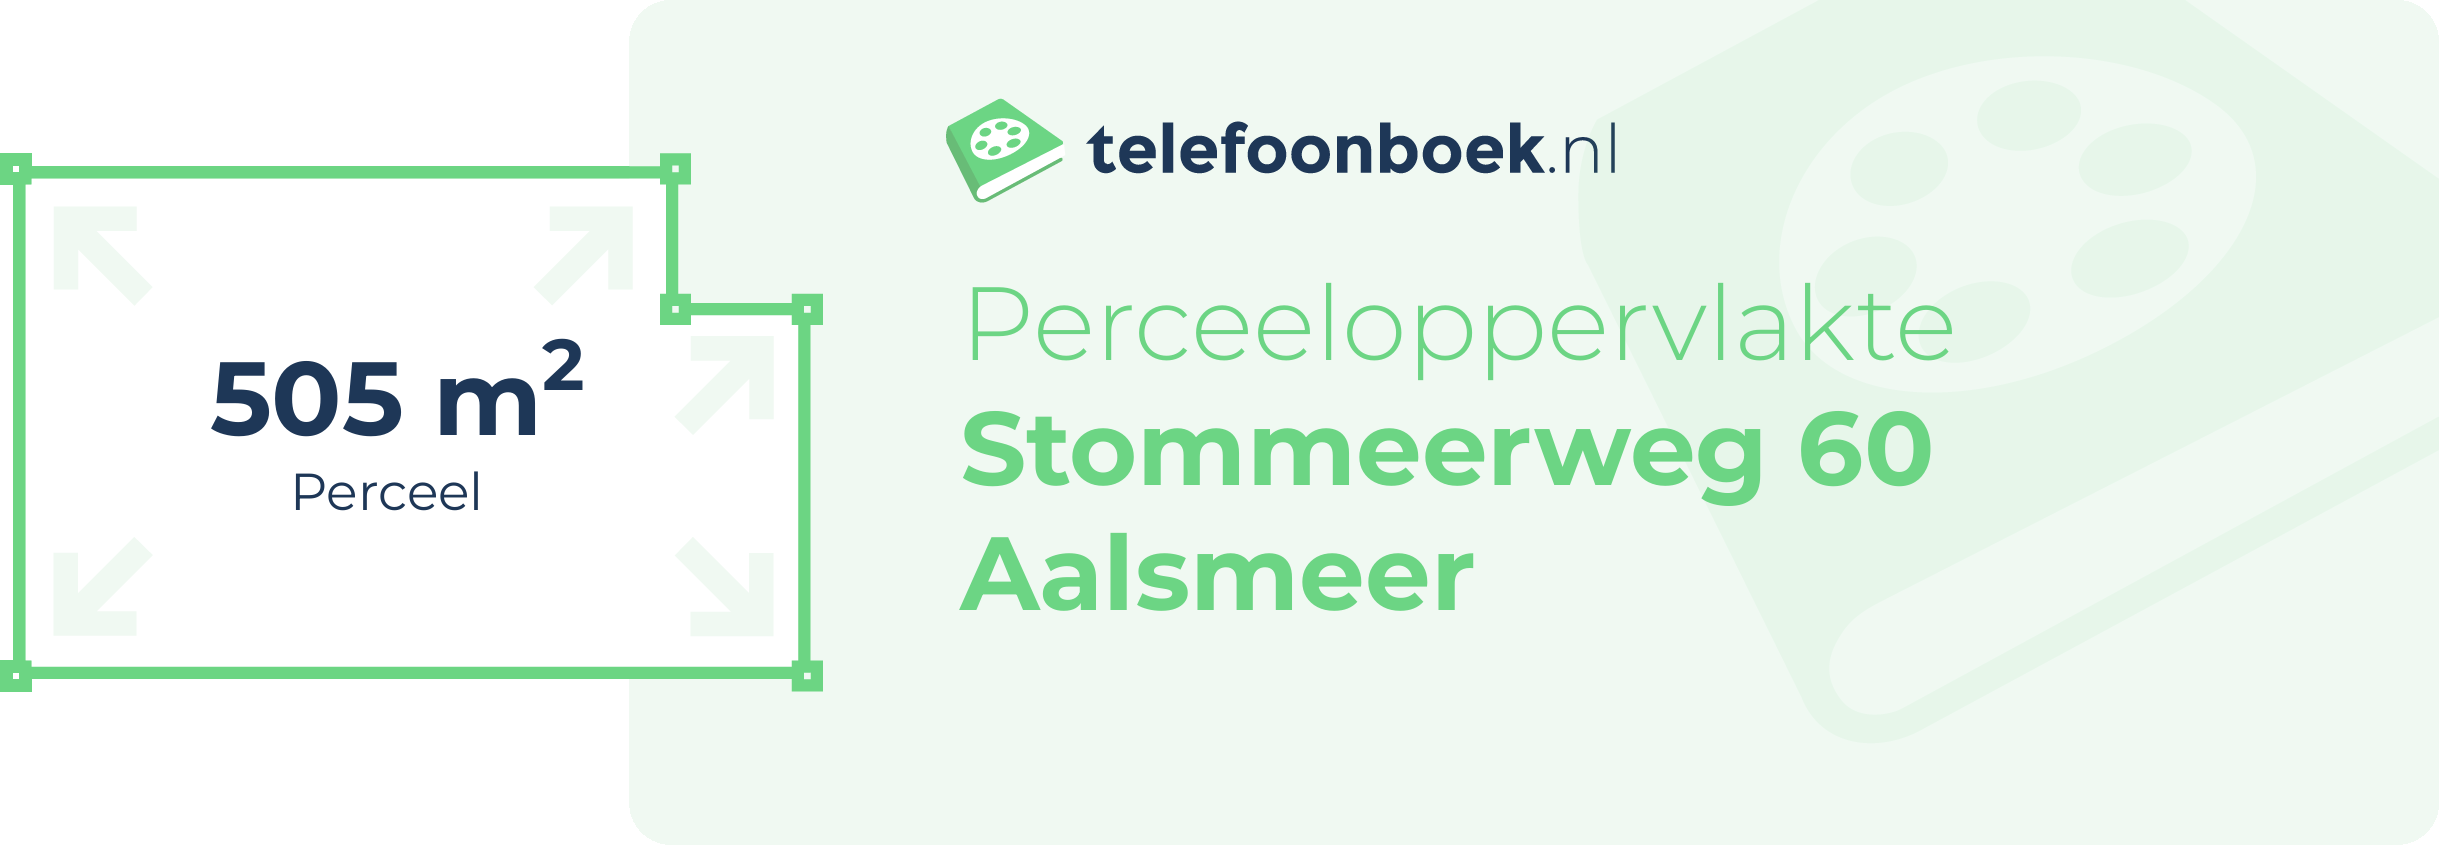 Perceeloppervlakte Stommeerweg 60 Aalsmeer